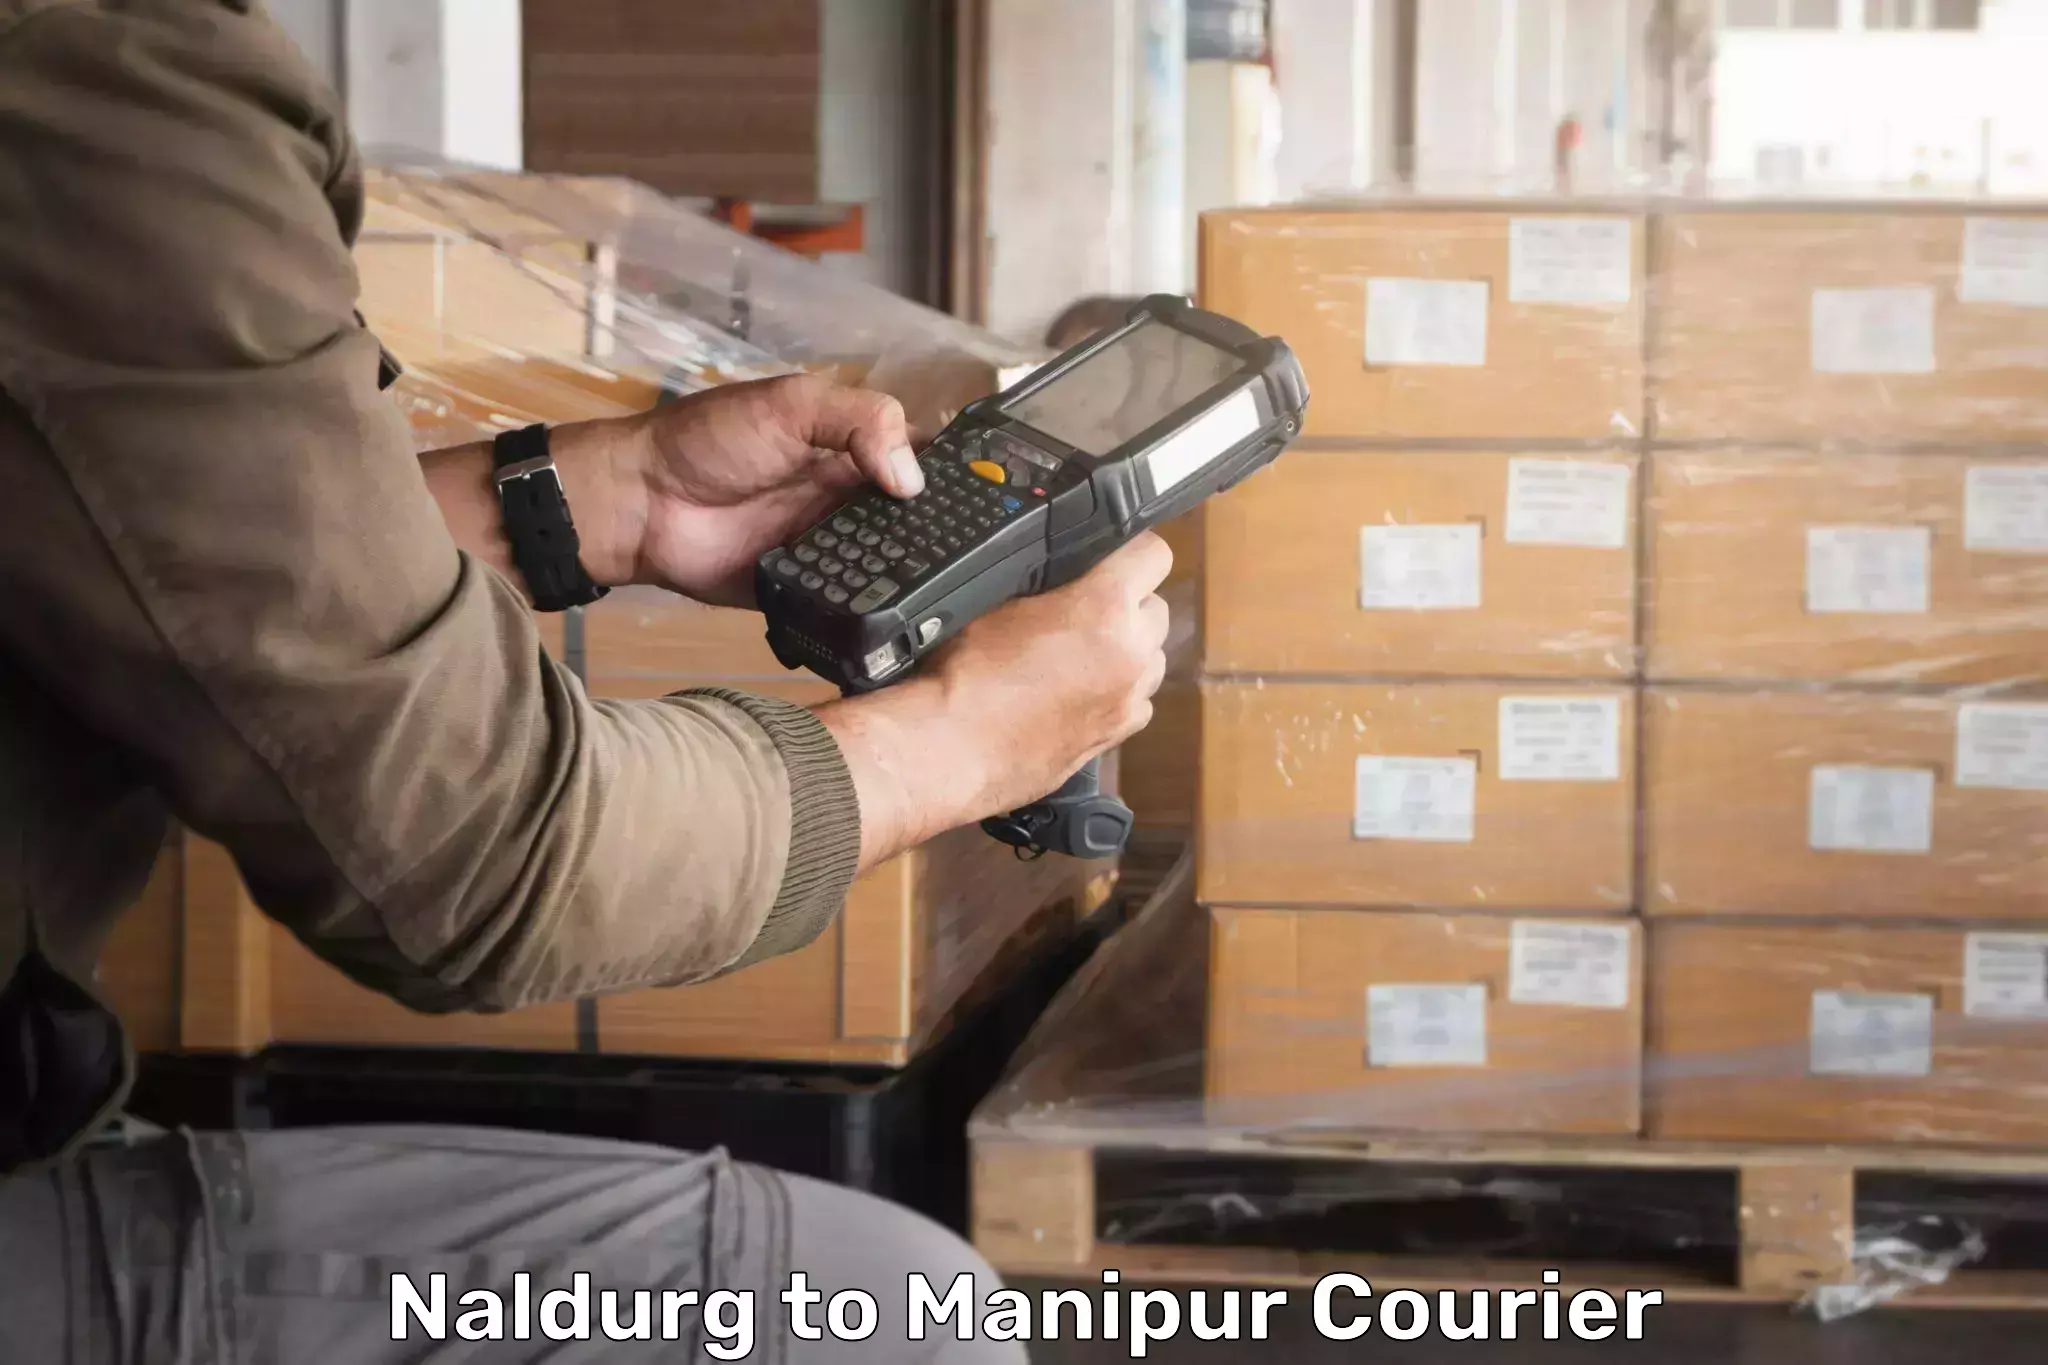 Weekend courier service Naldurg to Manipur